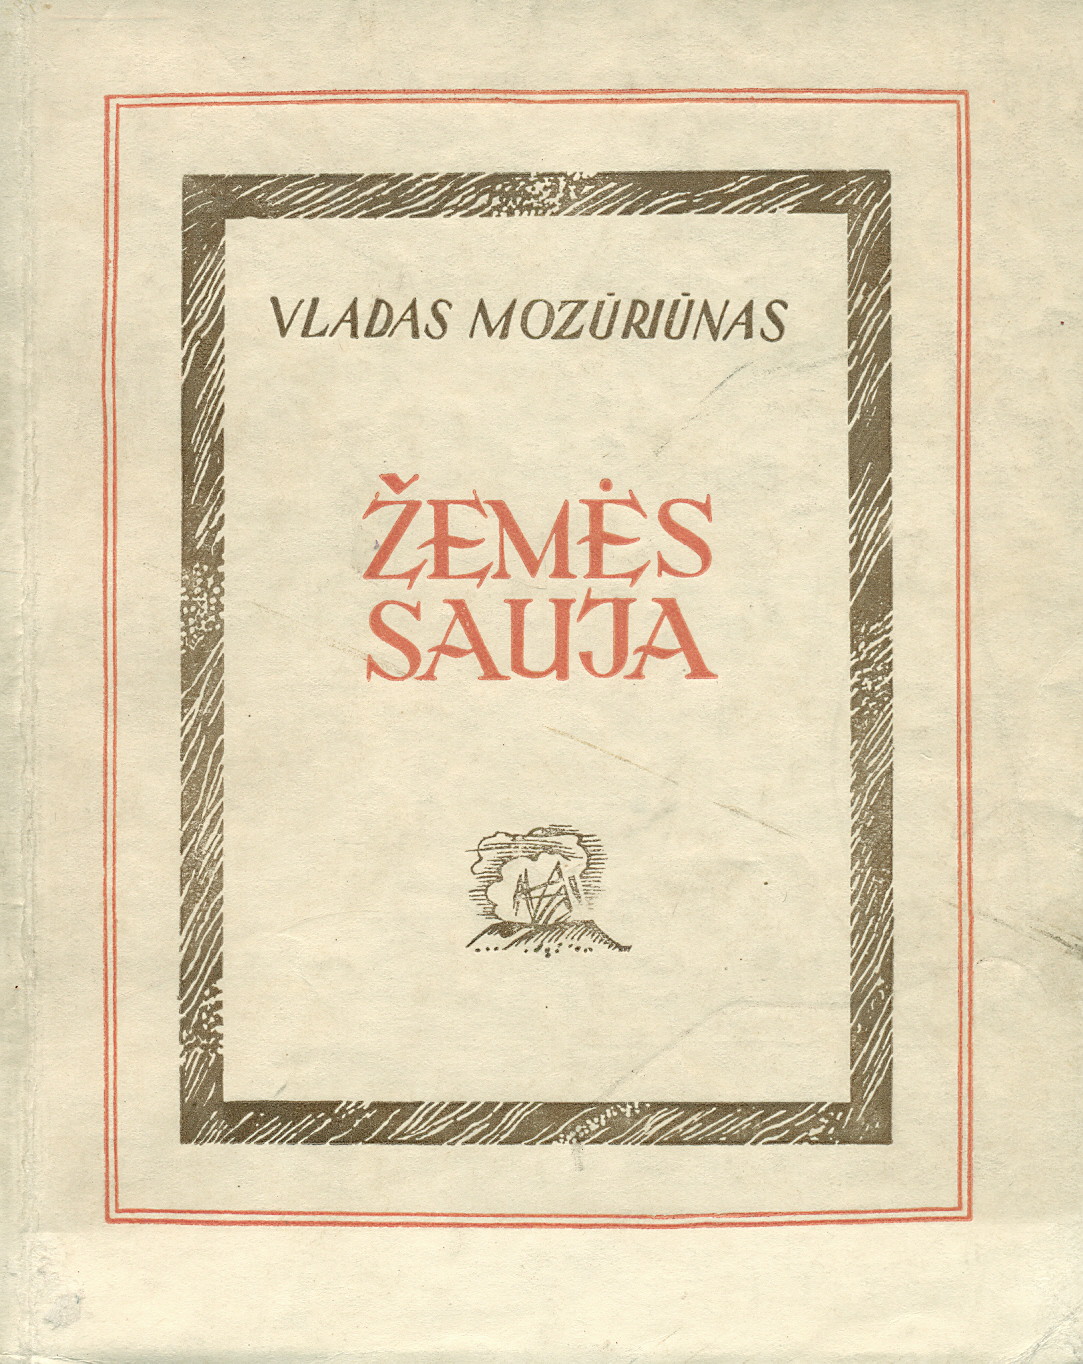 Vladas Mozūriūnas. Žemės sauja. Vilnius: Valstybinė grožinės literatūros leidykla, 1947 m. (pirmasis V. Mozūriūno eilėraščių rinkinys) – MLLM 2134